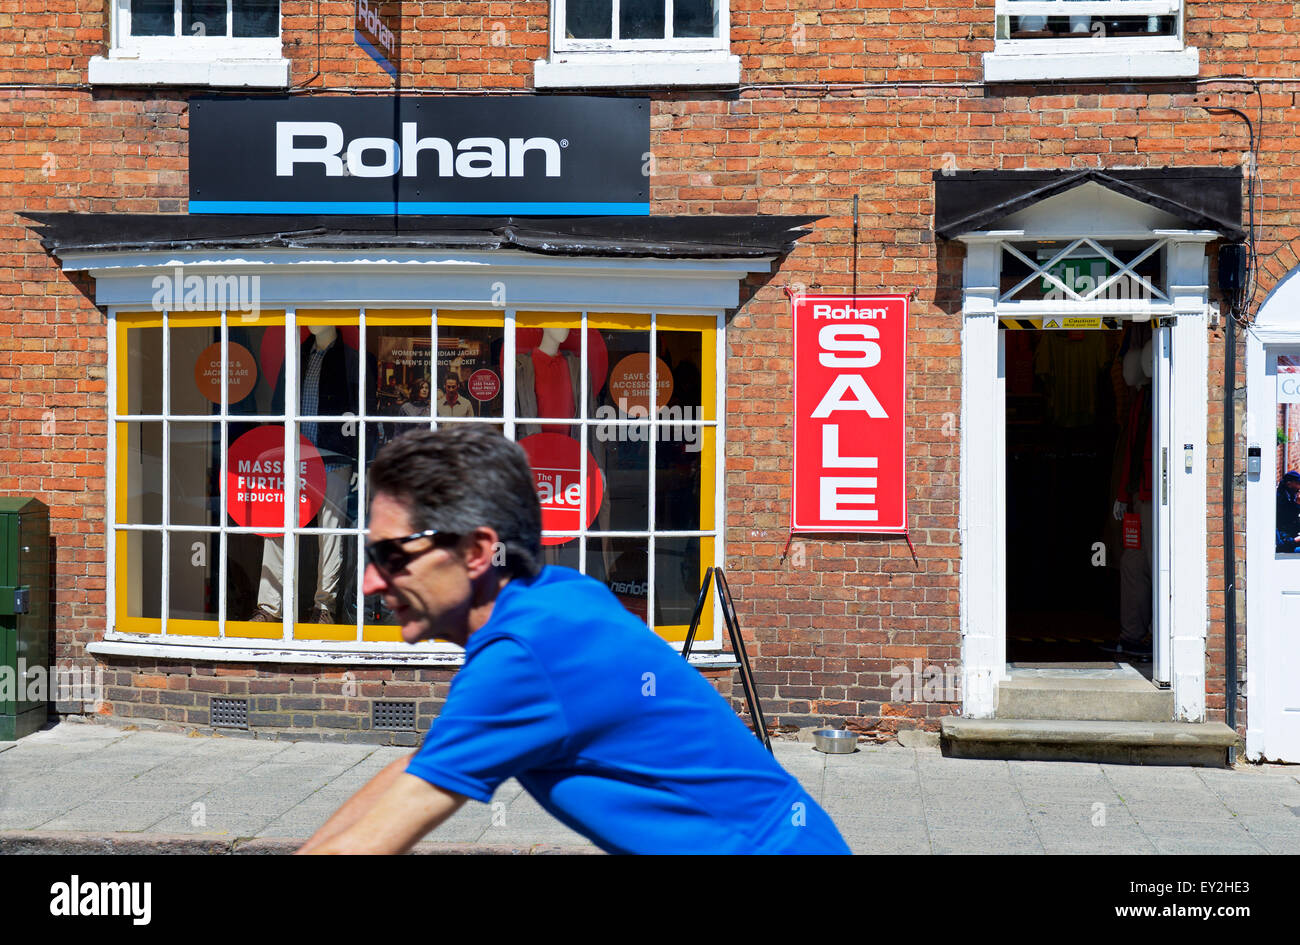 Uomo passato ciclismo Rohan abbigliamento outdoor shop, Stratford upon Avon, Warwickshire, Inghilterra, Regno Unito Foto Stock